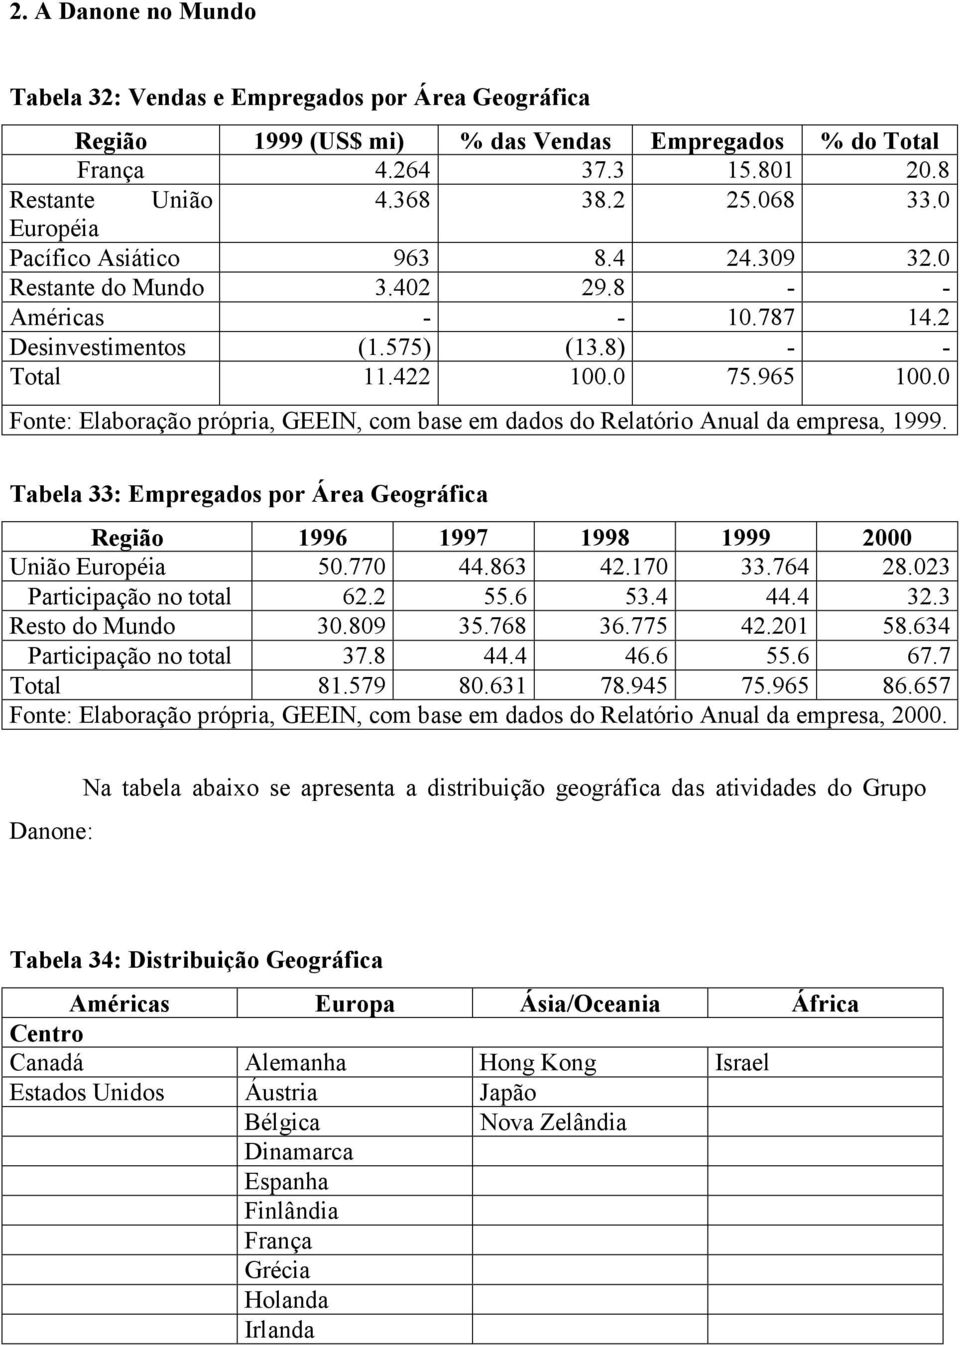 0 Fonte: Elaboração própria, GEEIN, com base em dados do Relatório Anual da empresa, 1999. Tabela 33: Empregados por Área Geográfica Região 1996 1997 1998 1999 2000 União Européia 50.770 44.863 42.